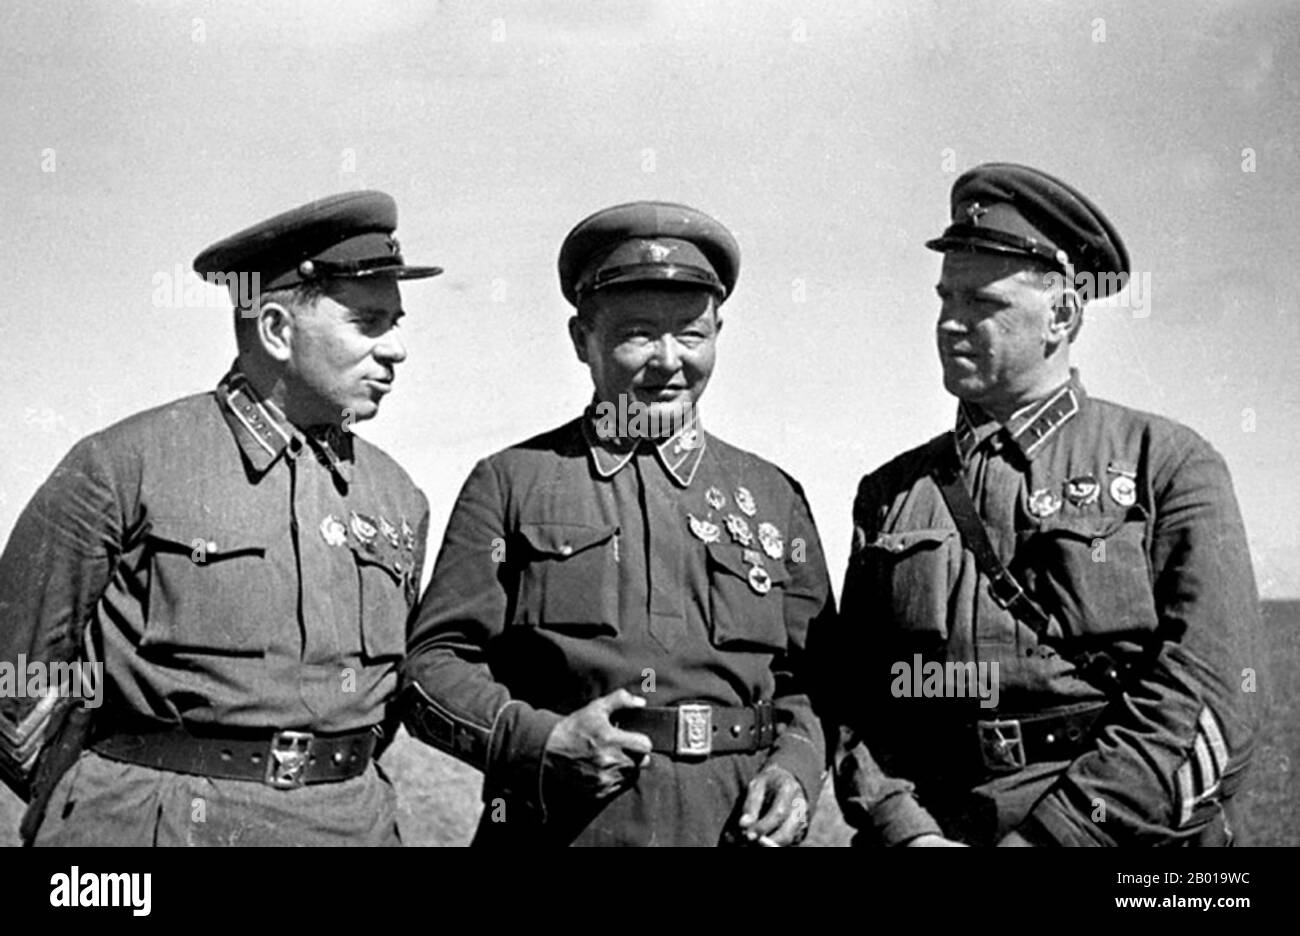 Mongolei: Oberst Grigori Schtern (links) Marschall Khorloogiin Choibalsan (Mitte), General Georgy Schukow (rechts), Sieger von Khalkhin Gol. Foto von Pavel Troshkin (1909-1944), 1939. Die Schlachten von Khalkhin Gol waren die entscheidenden Kämpfe des nicht deklarierten sowjetisch-japanischen Grenzkrieges, der 1939 zwischen der Sowjetunion, der Mongolei und Japan geführt wurde. Sie wurden nach dem Fluss Khalkhin Gol benannt, der durch das Schlachtfeld fließt. In Japan wird die entscheidende Schlacht des Konflikts nach einem nahegelegenen Dorf als Nomonhan-Vorfall (Nomonhan Jiken) bezeichnet und war eine totale Niederlage für ihre Armee. Stockfoto